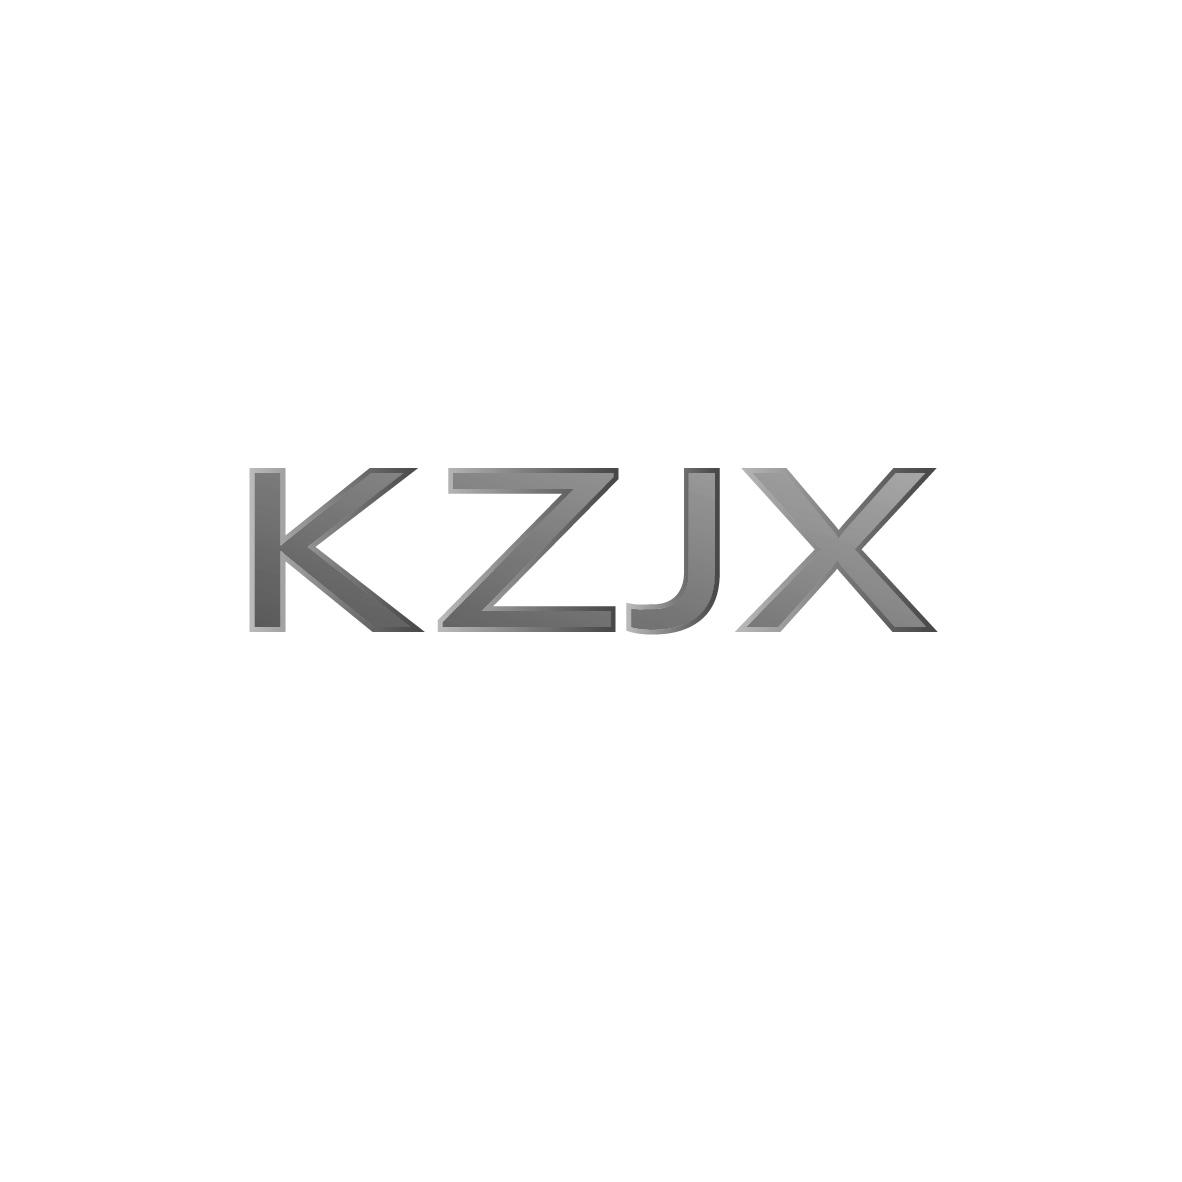 转让商标-KZJX